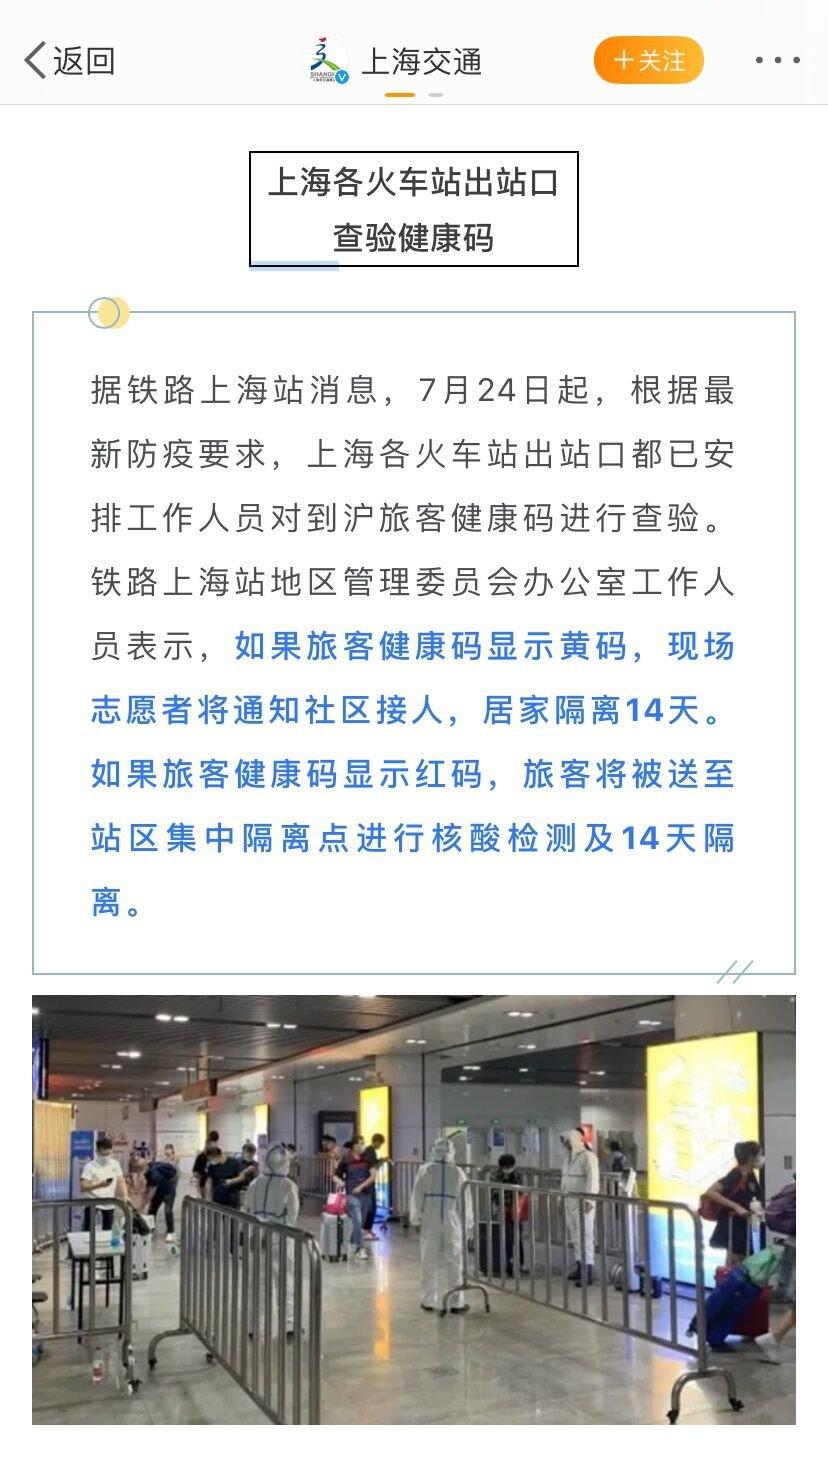 上海火车站和虹桥火车站最新疫情规定